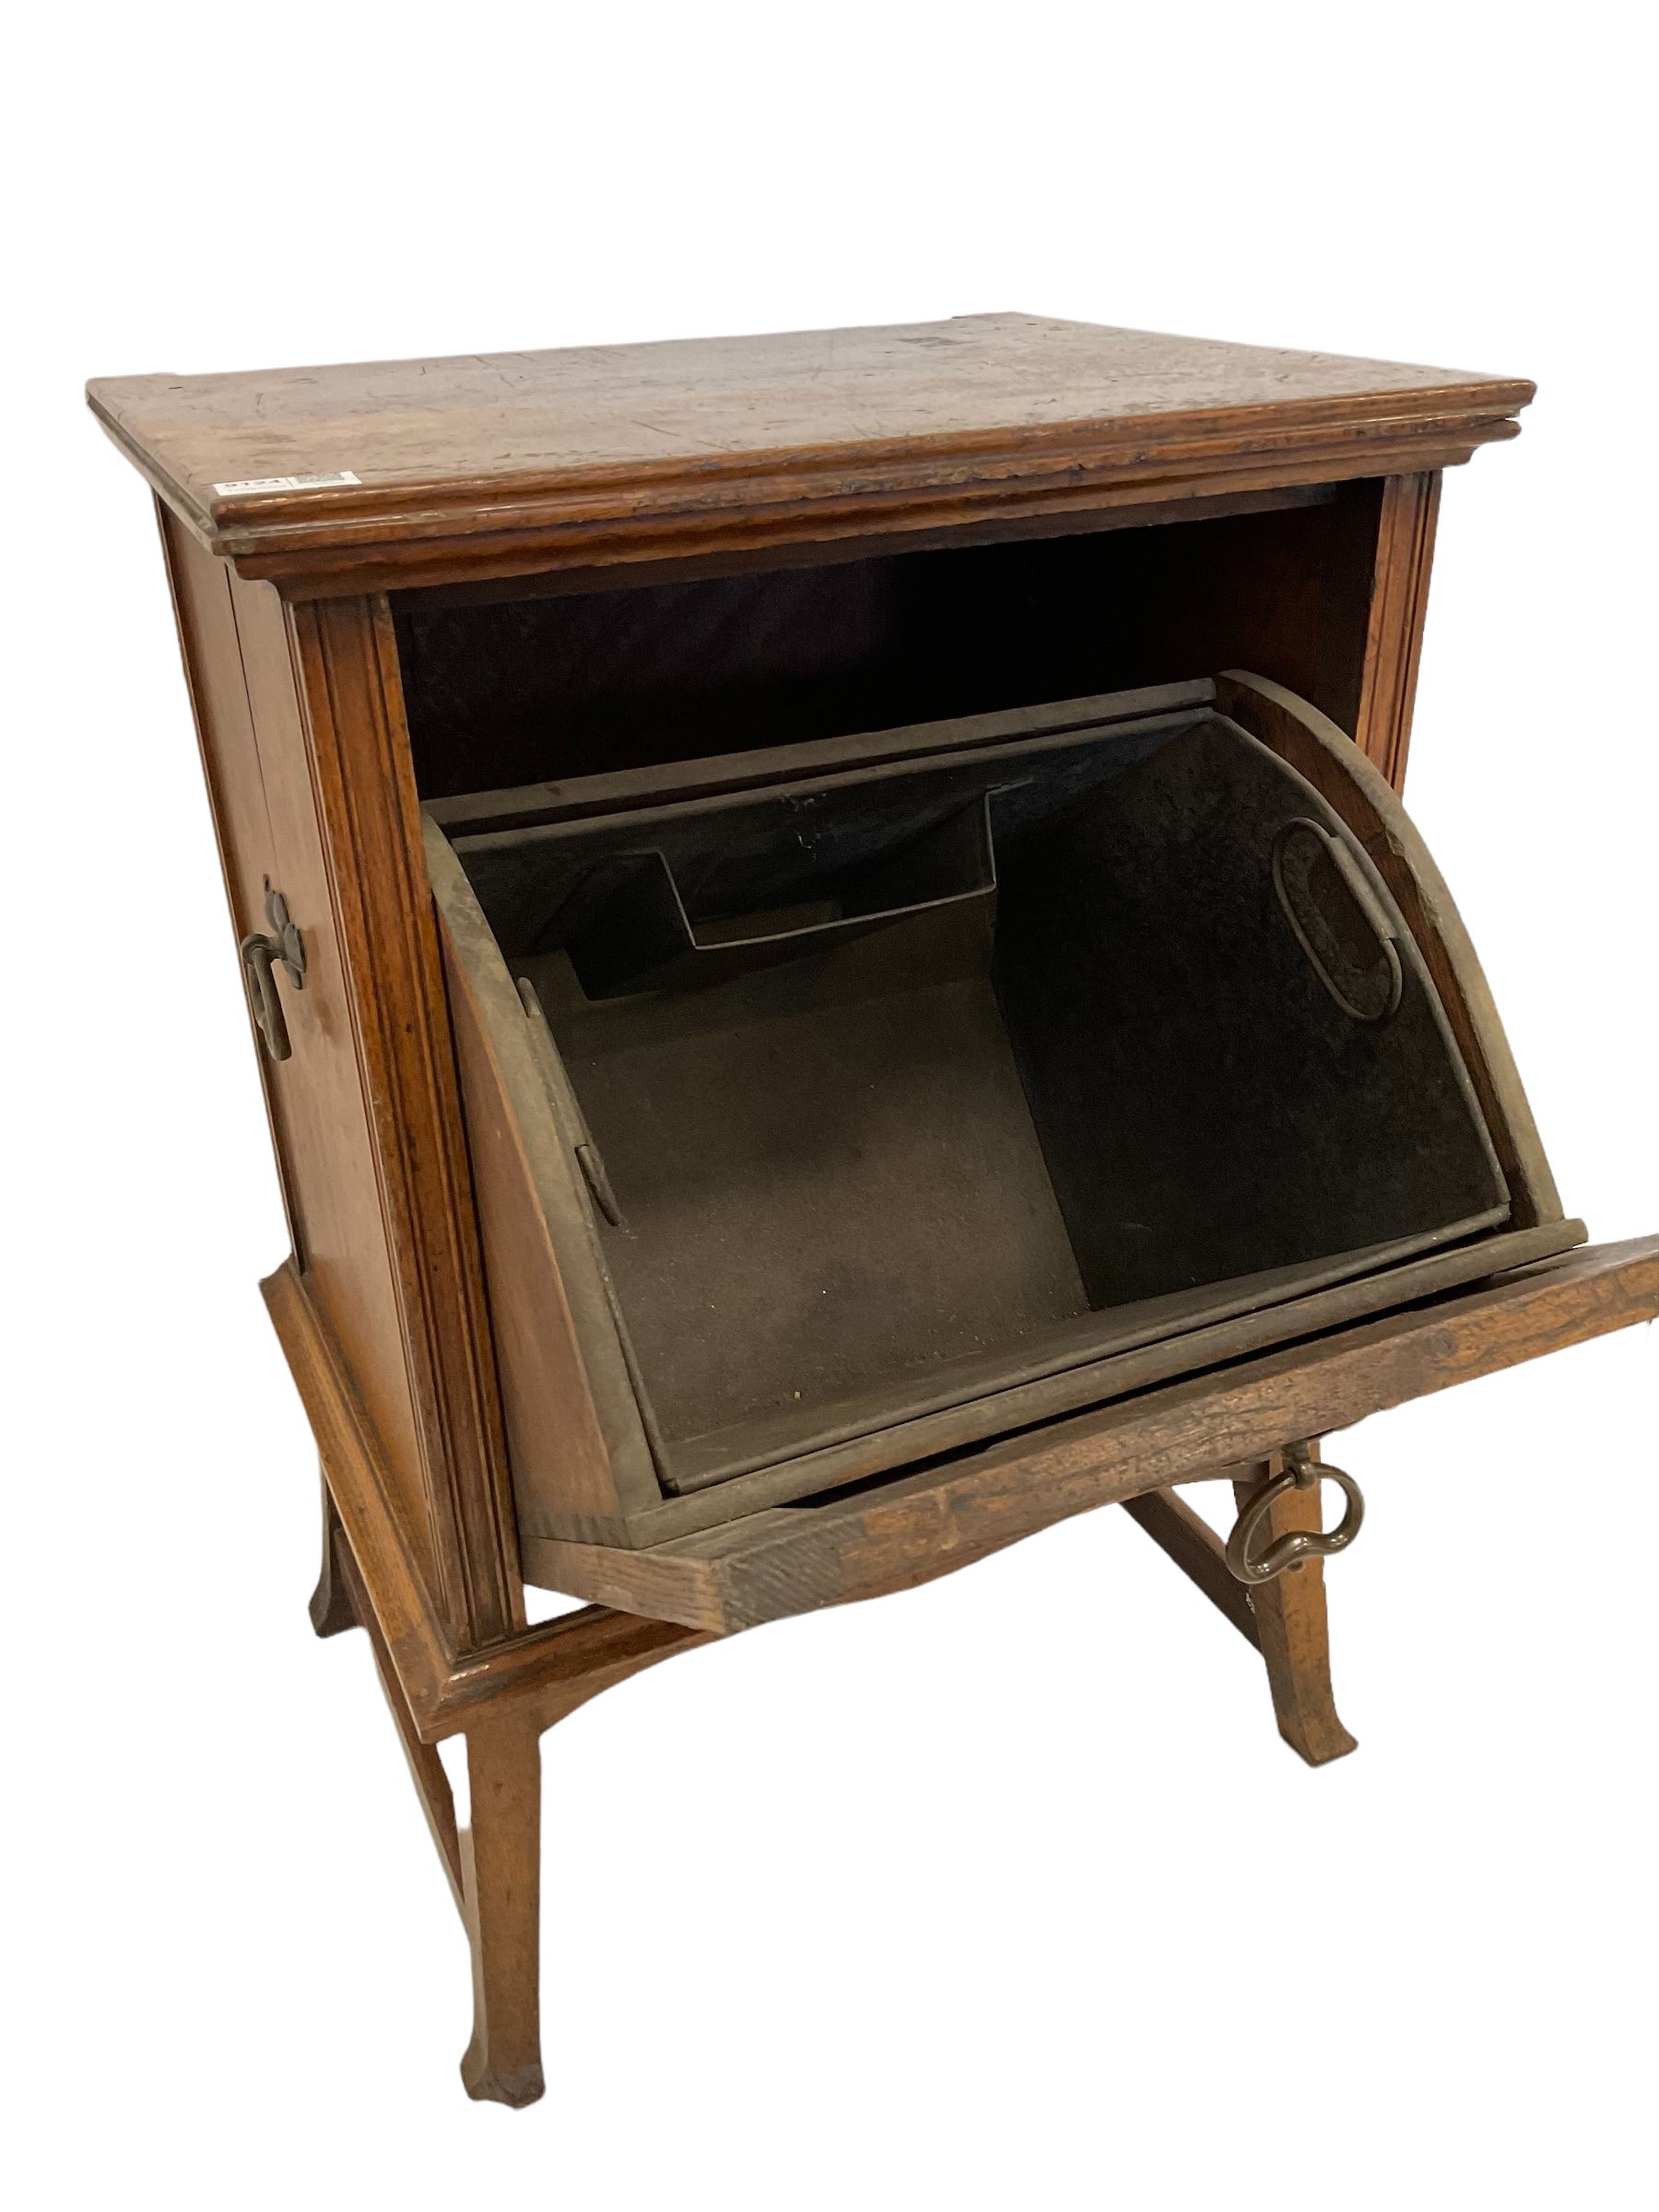 Arts & Crafts period oak coal box - Image 2 of 3